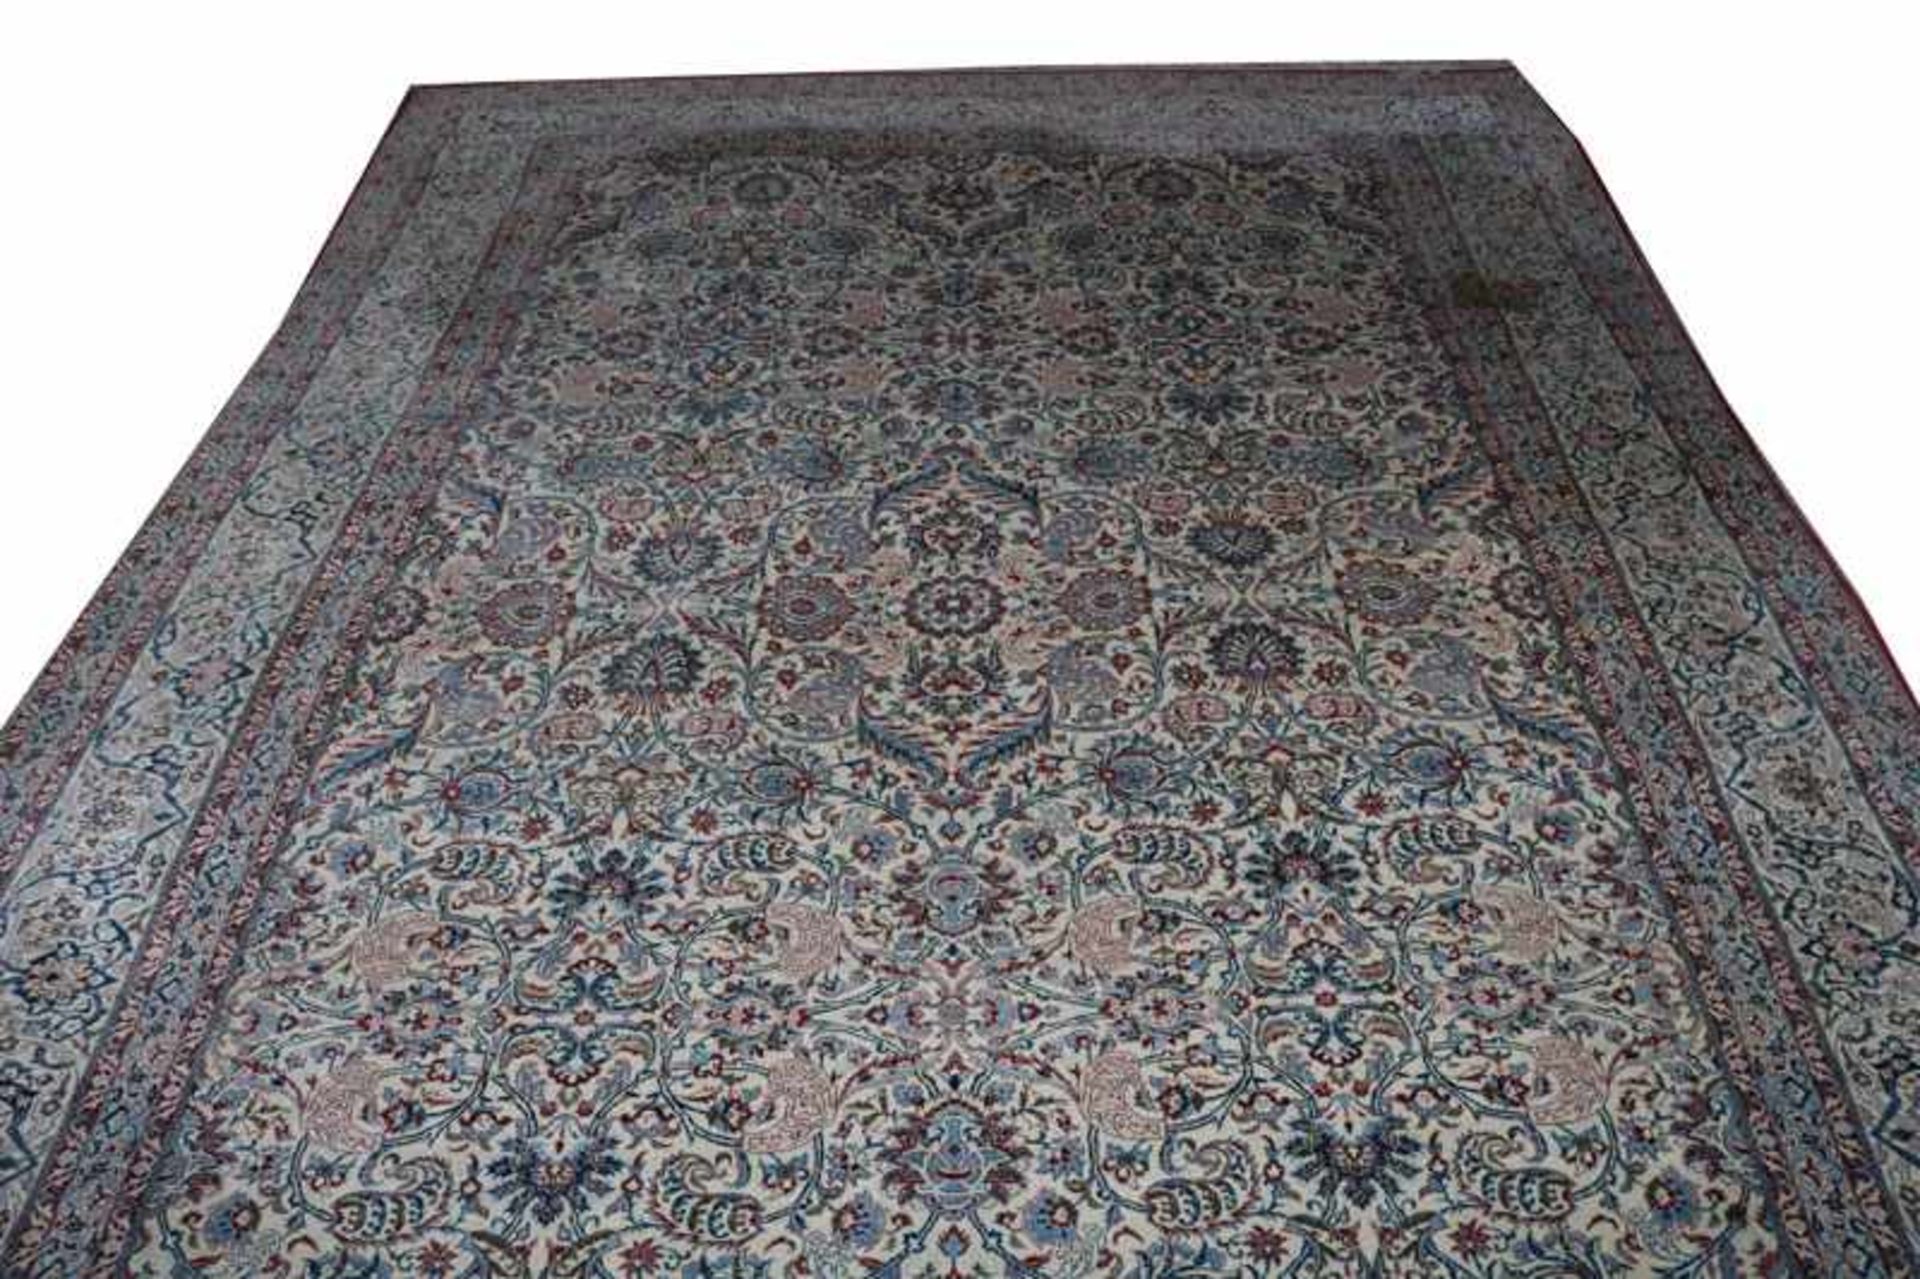 Teppich, Kirman, beige/blau/rot, Gebrauchsspuren, fleckig, stark abgetreten, 327 cm x 236 cm